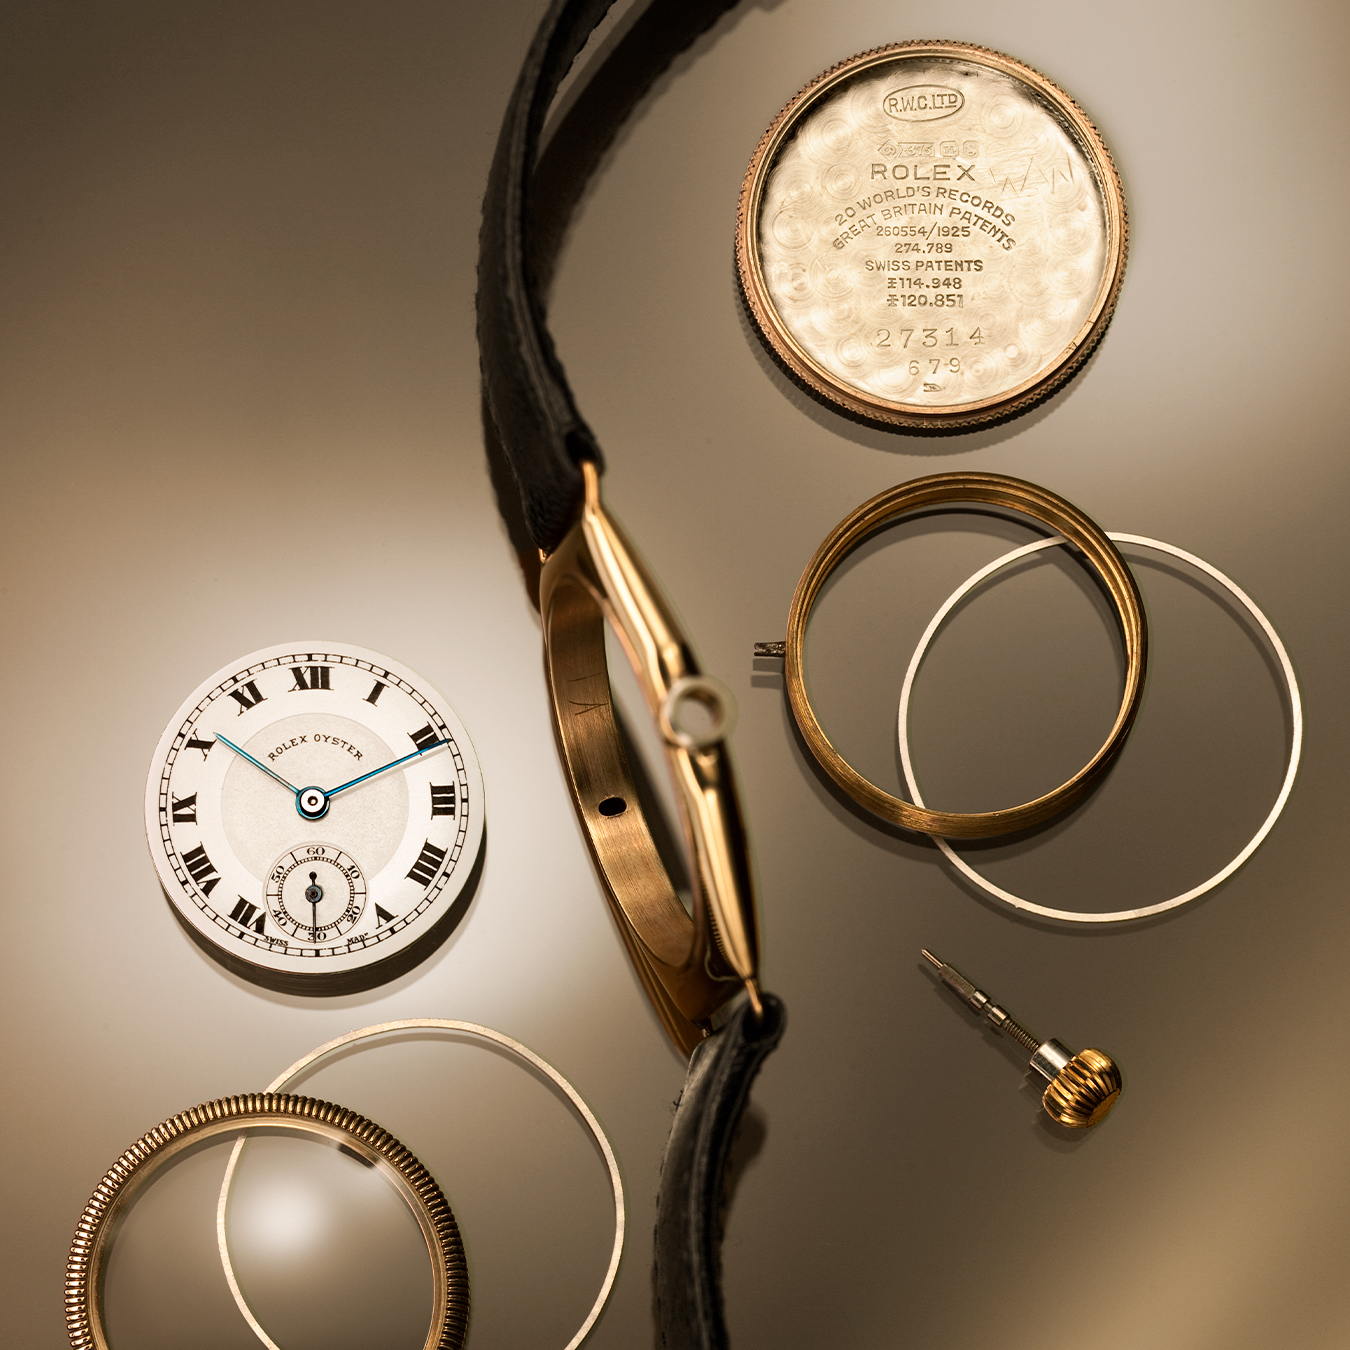 Universo Rolex reloj despiece